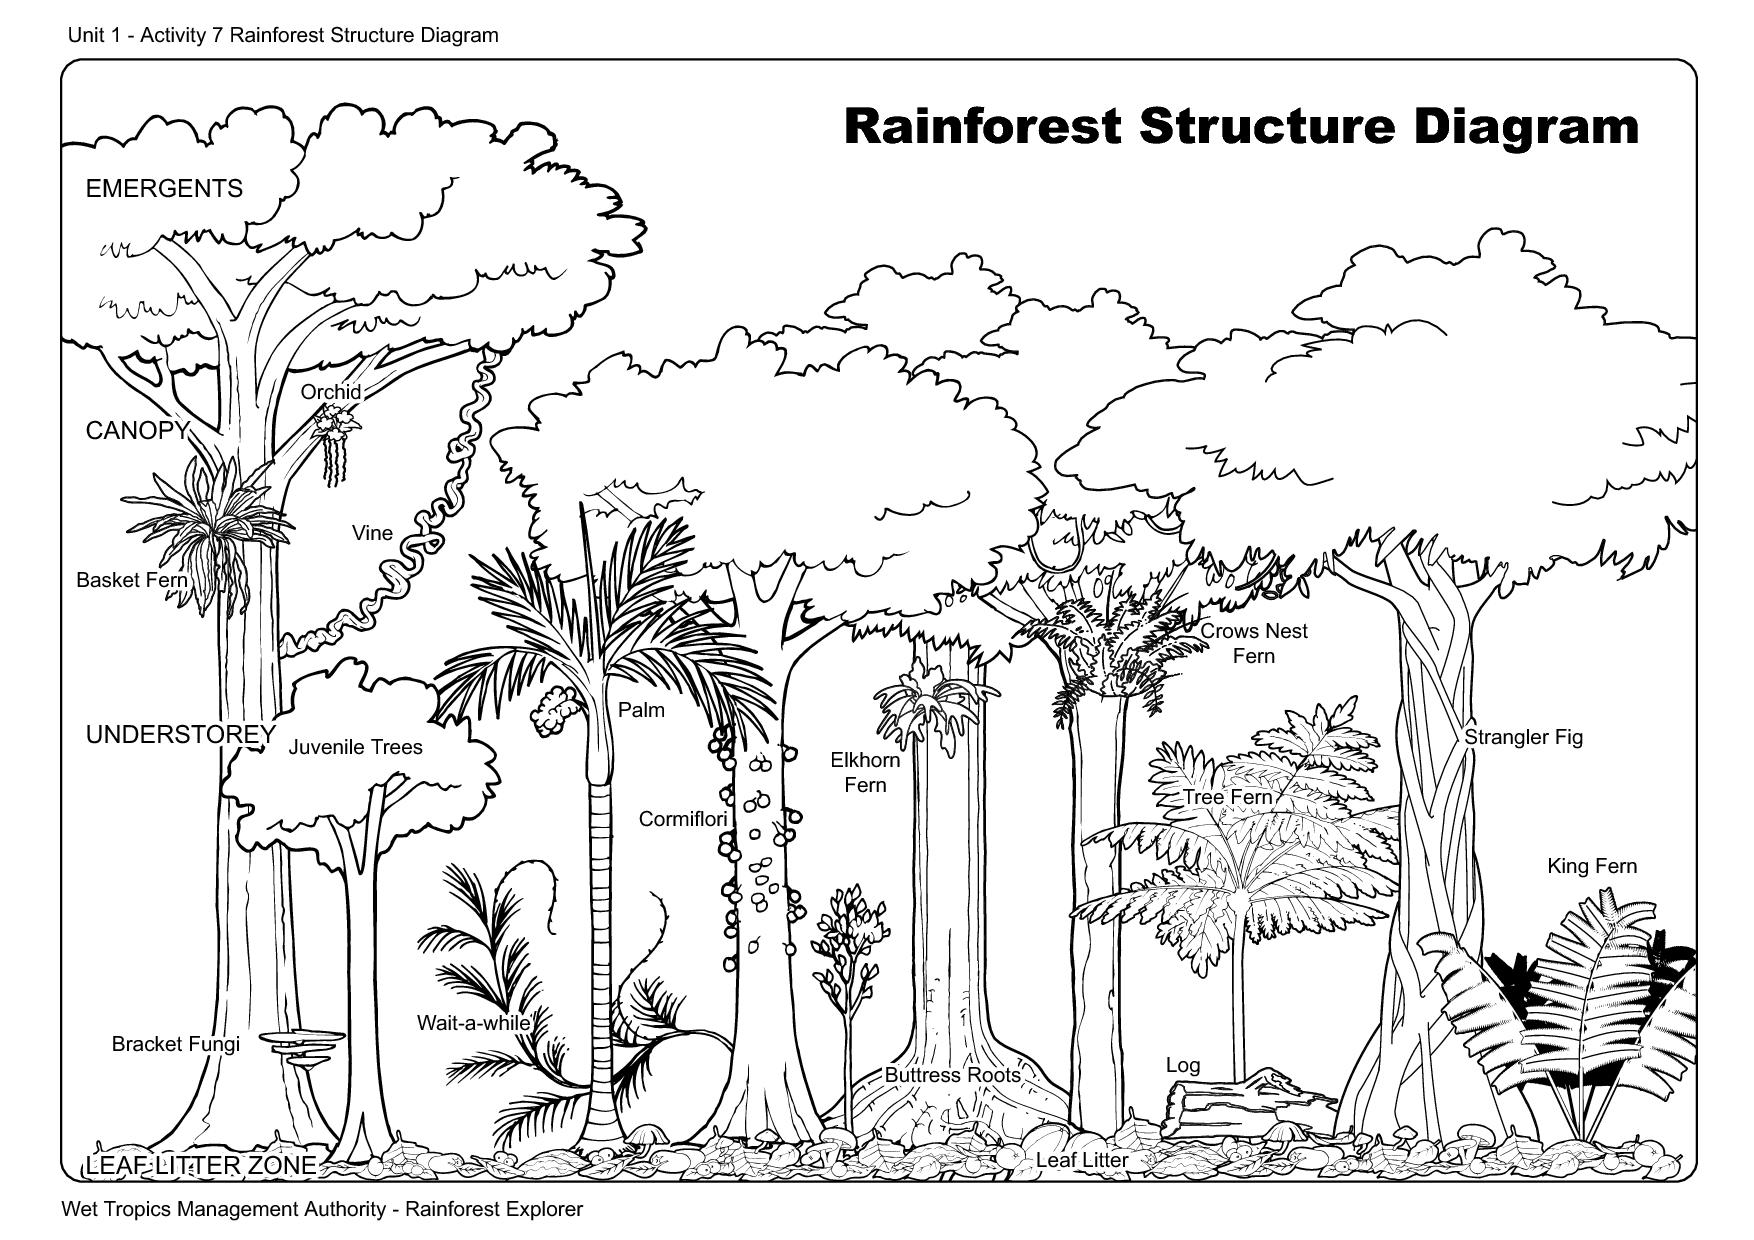 Rainforest Structure Diagram Image